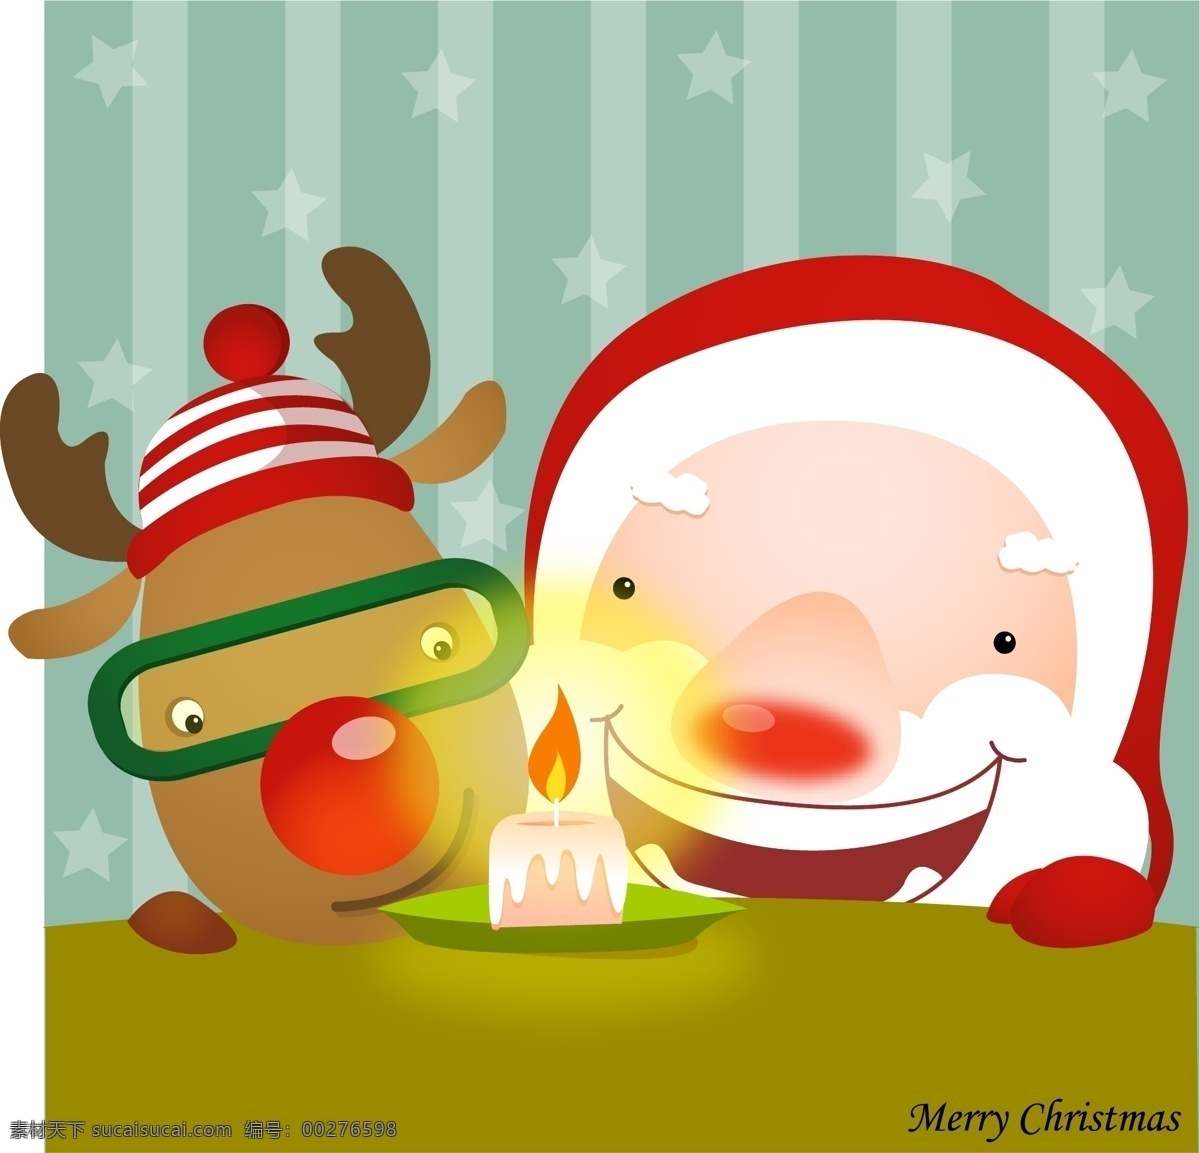 韩国 圣诞老人 麋鹿 圣诞节 促销 矢量图 卡通 可爱蜡烛 平安夜 礼物 卡通设计